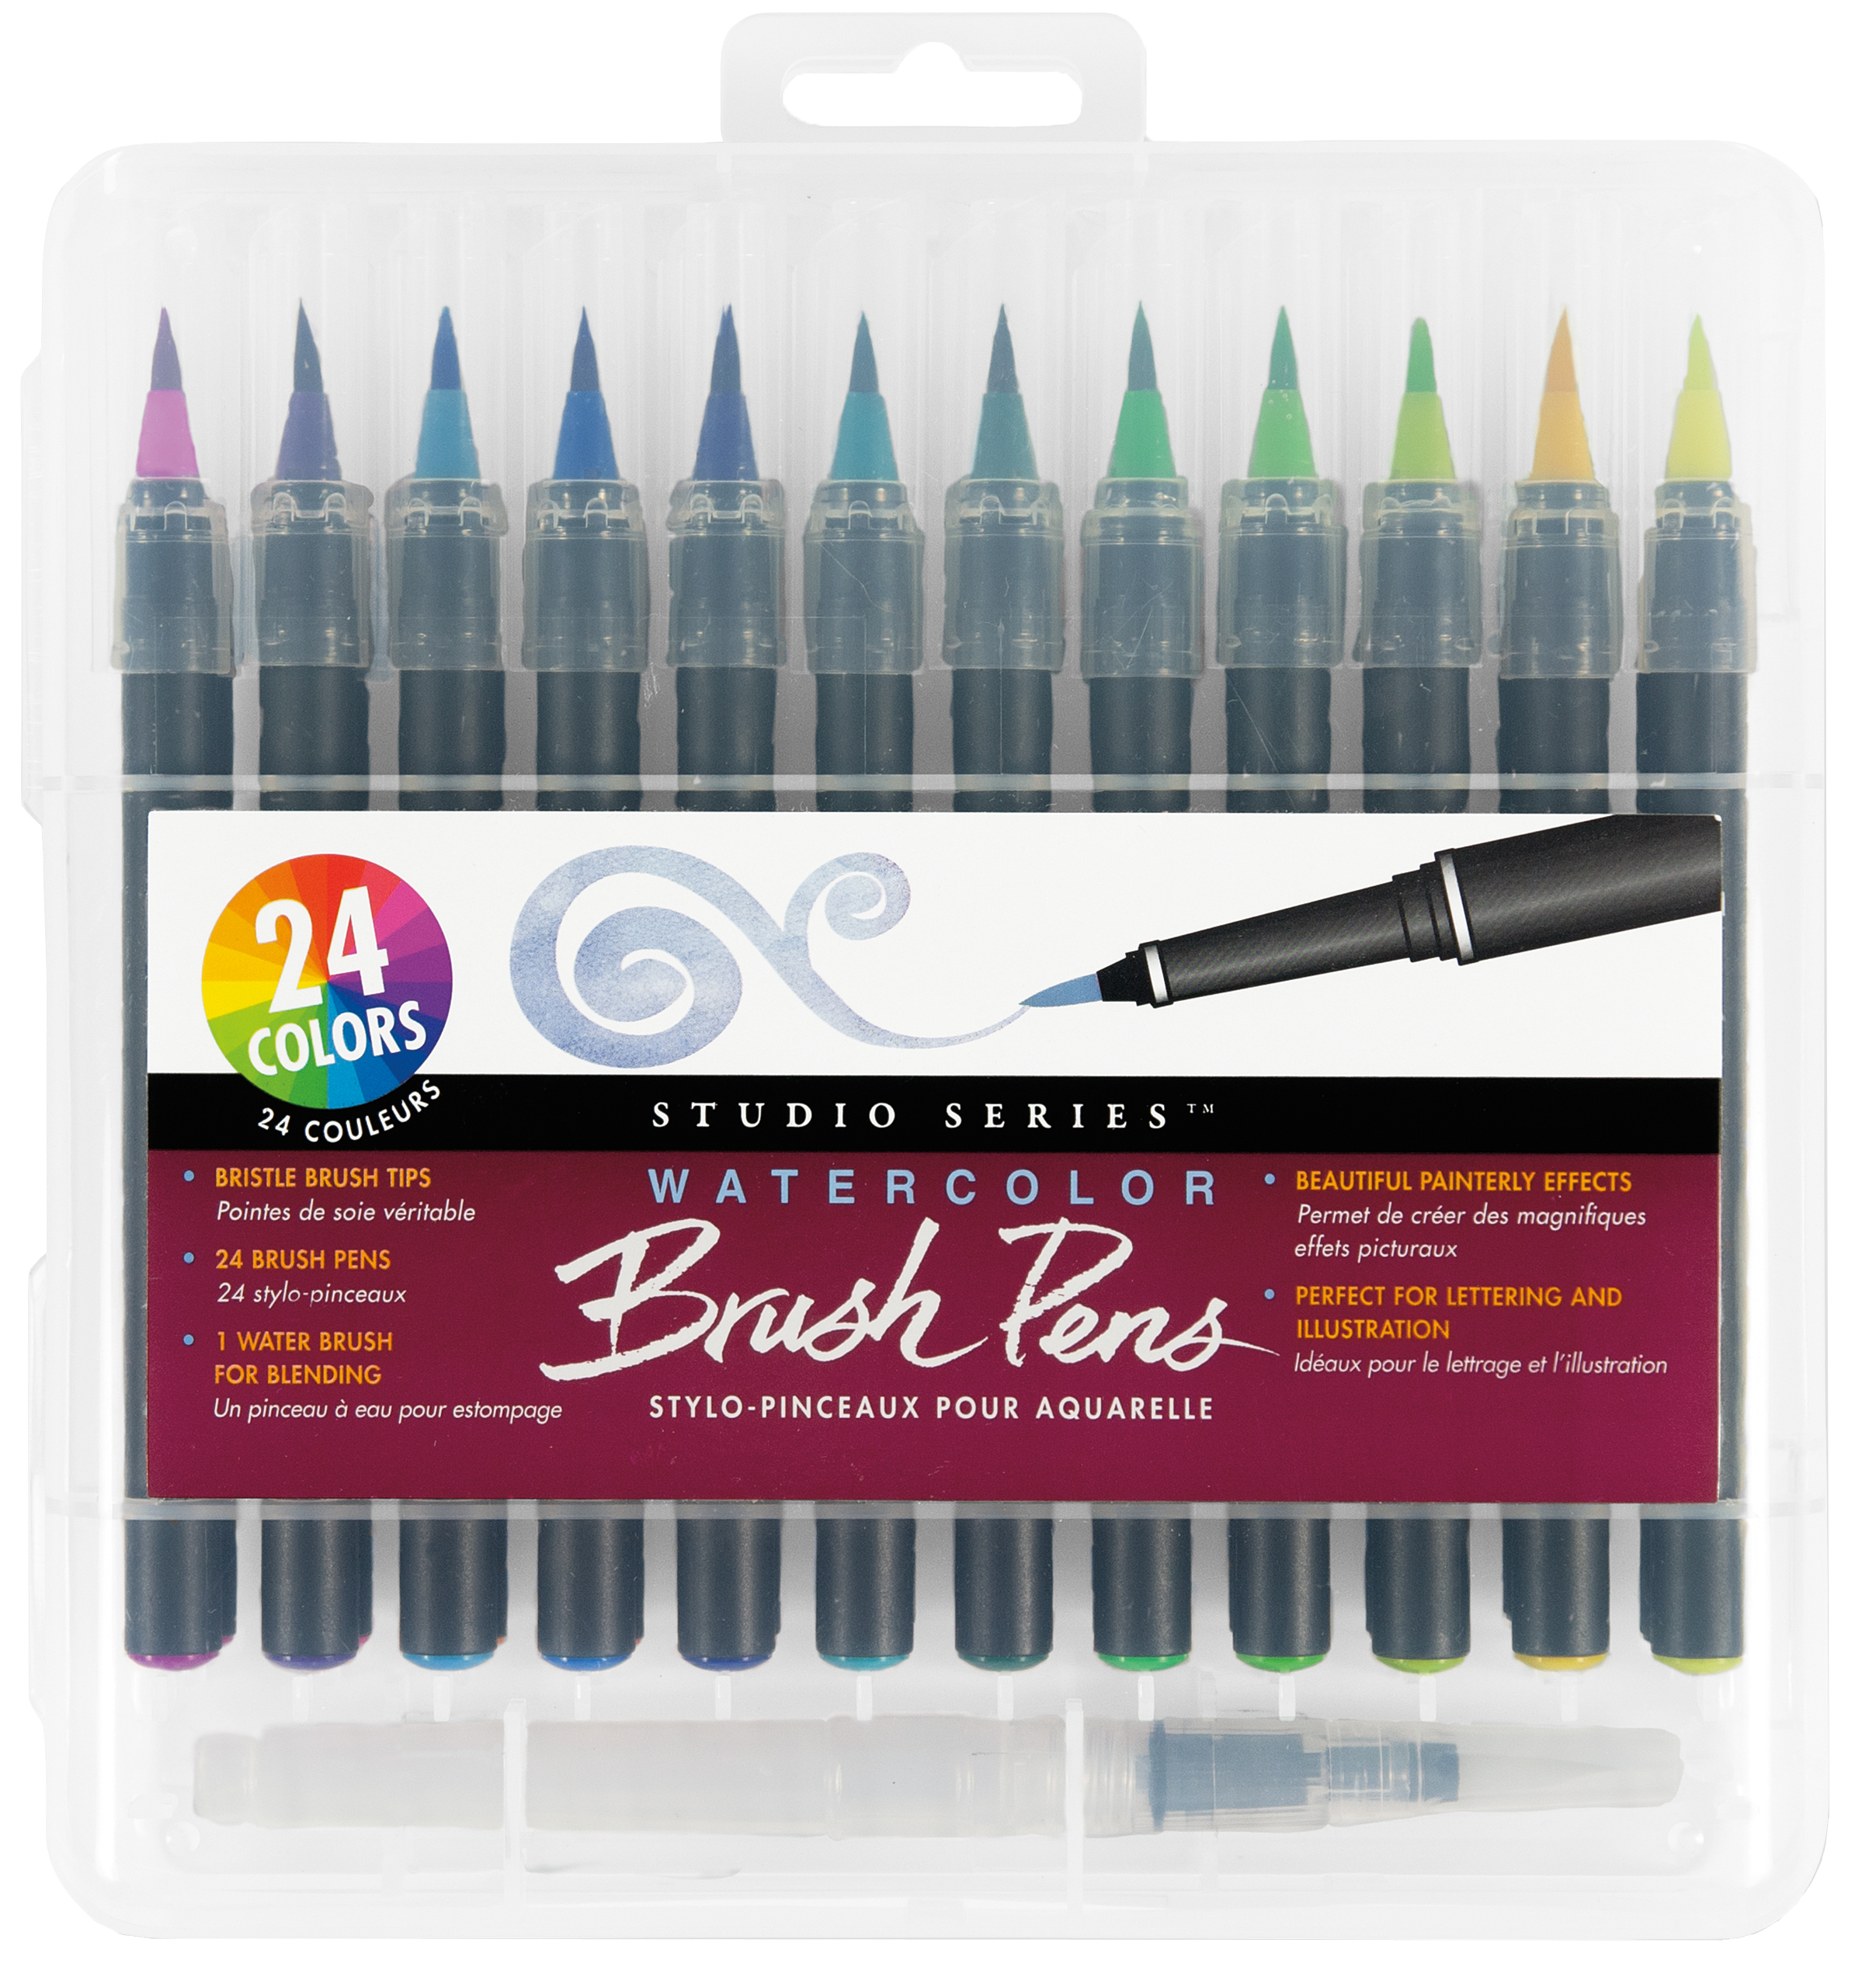 Refillable Watercolor pens 24 Colors